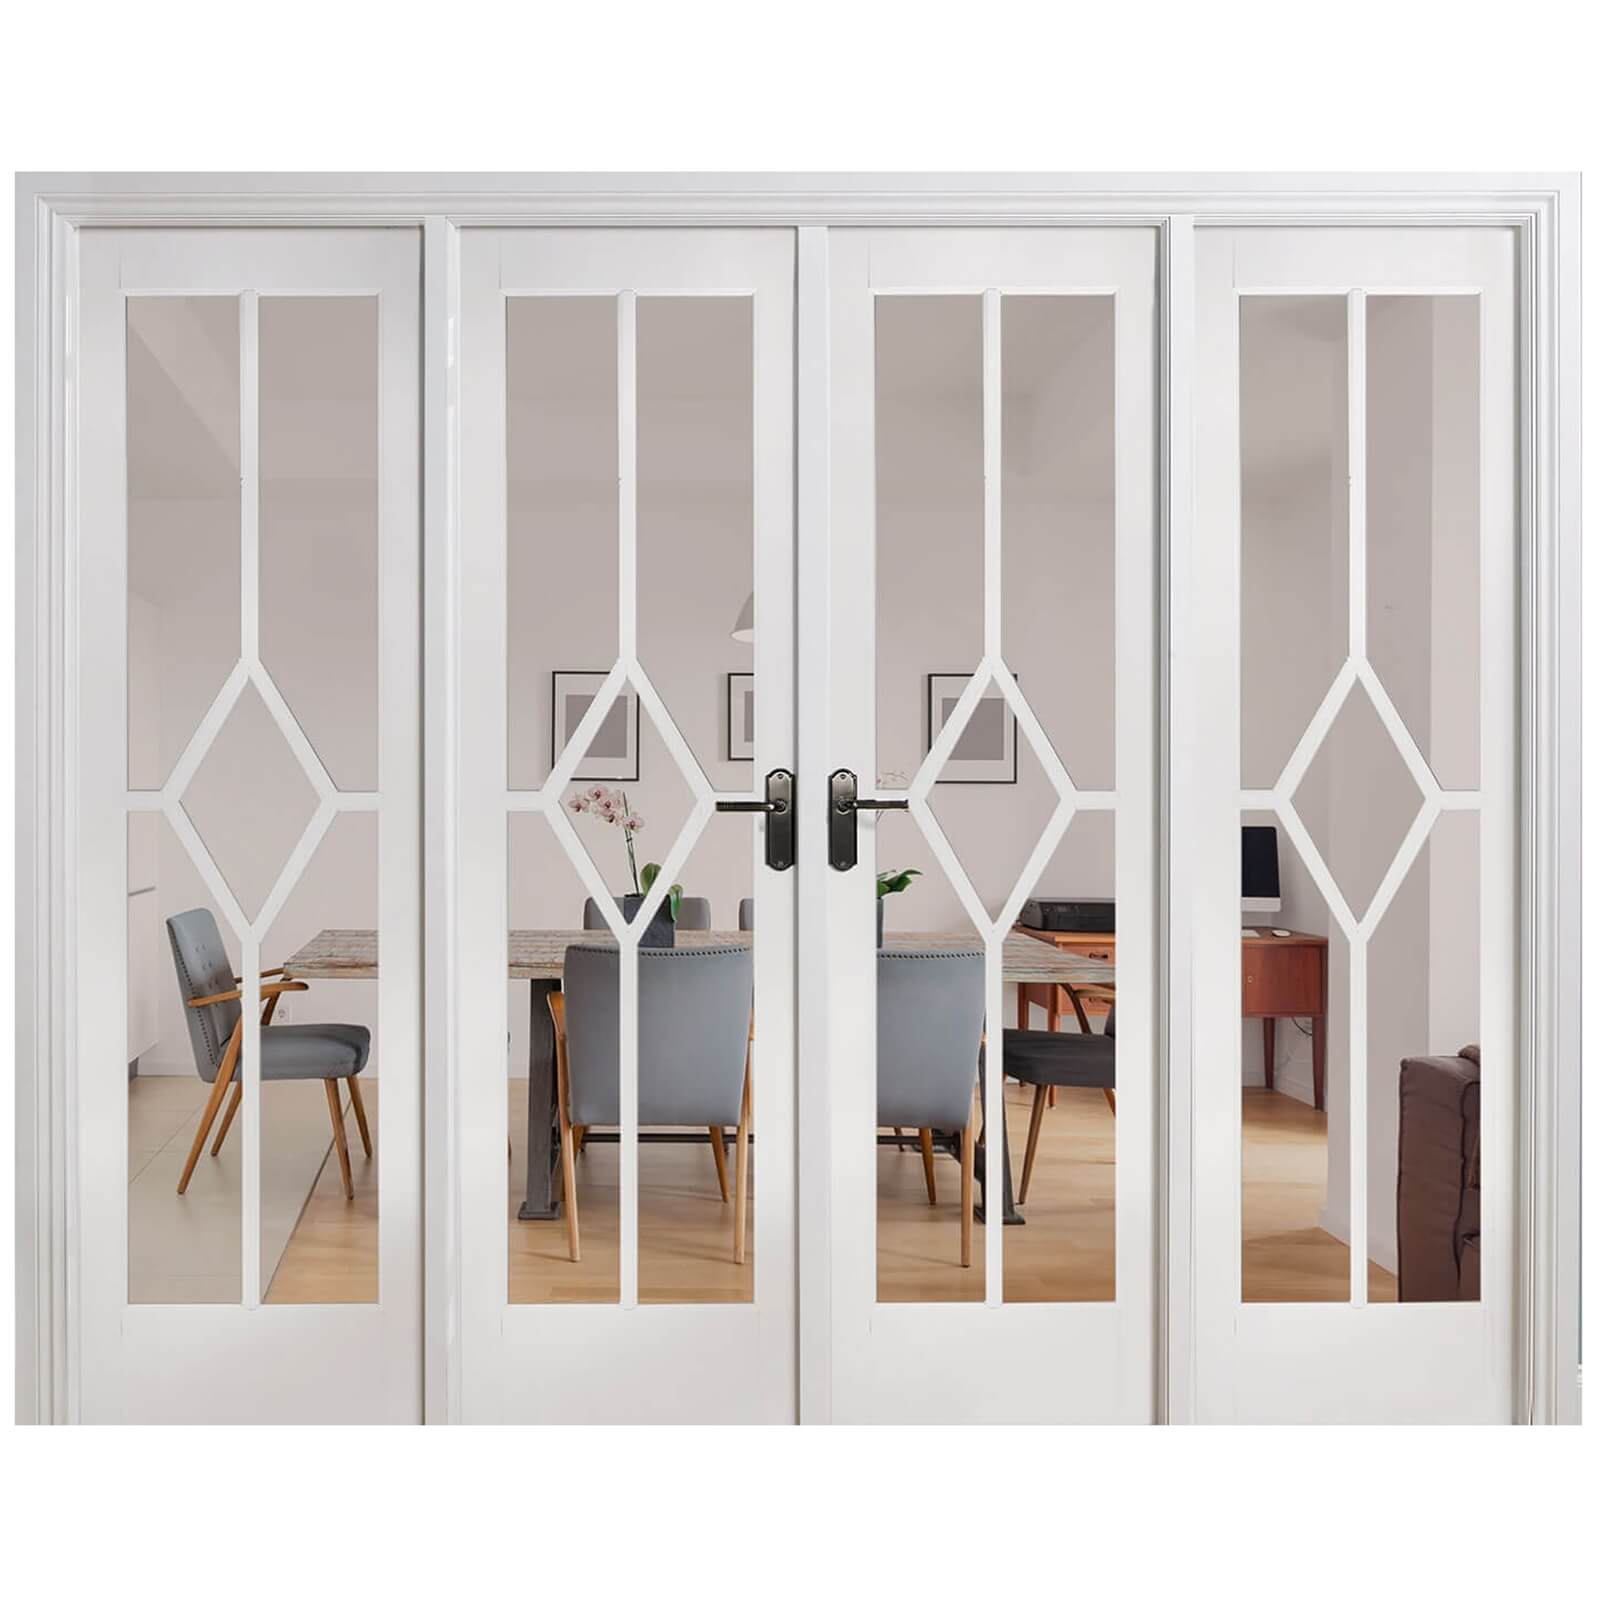 Reims Internal Glazed Primed White Room Divider - 2478 x 2031mm